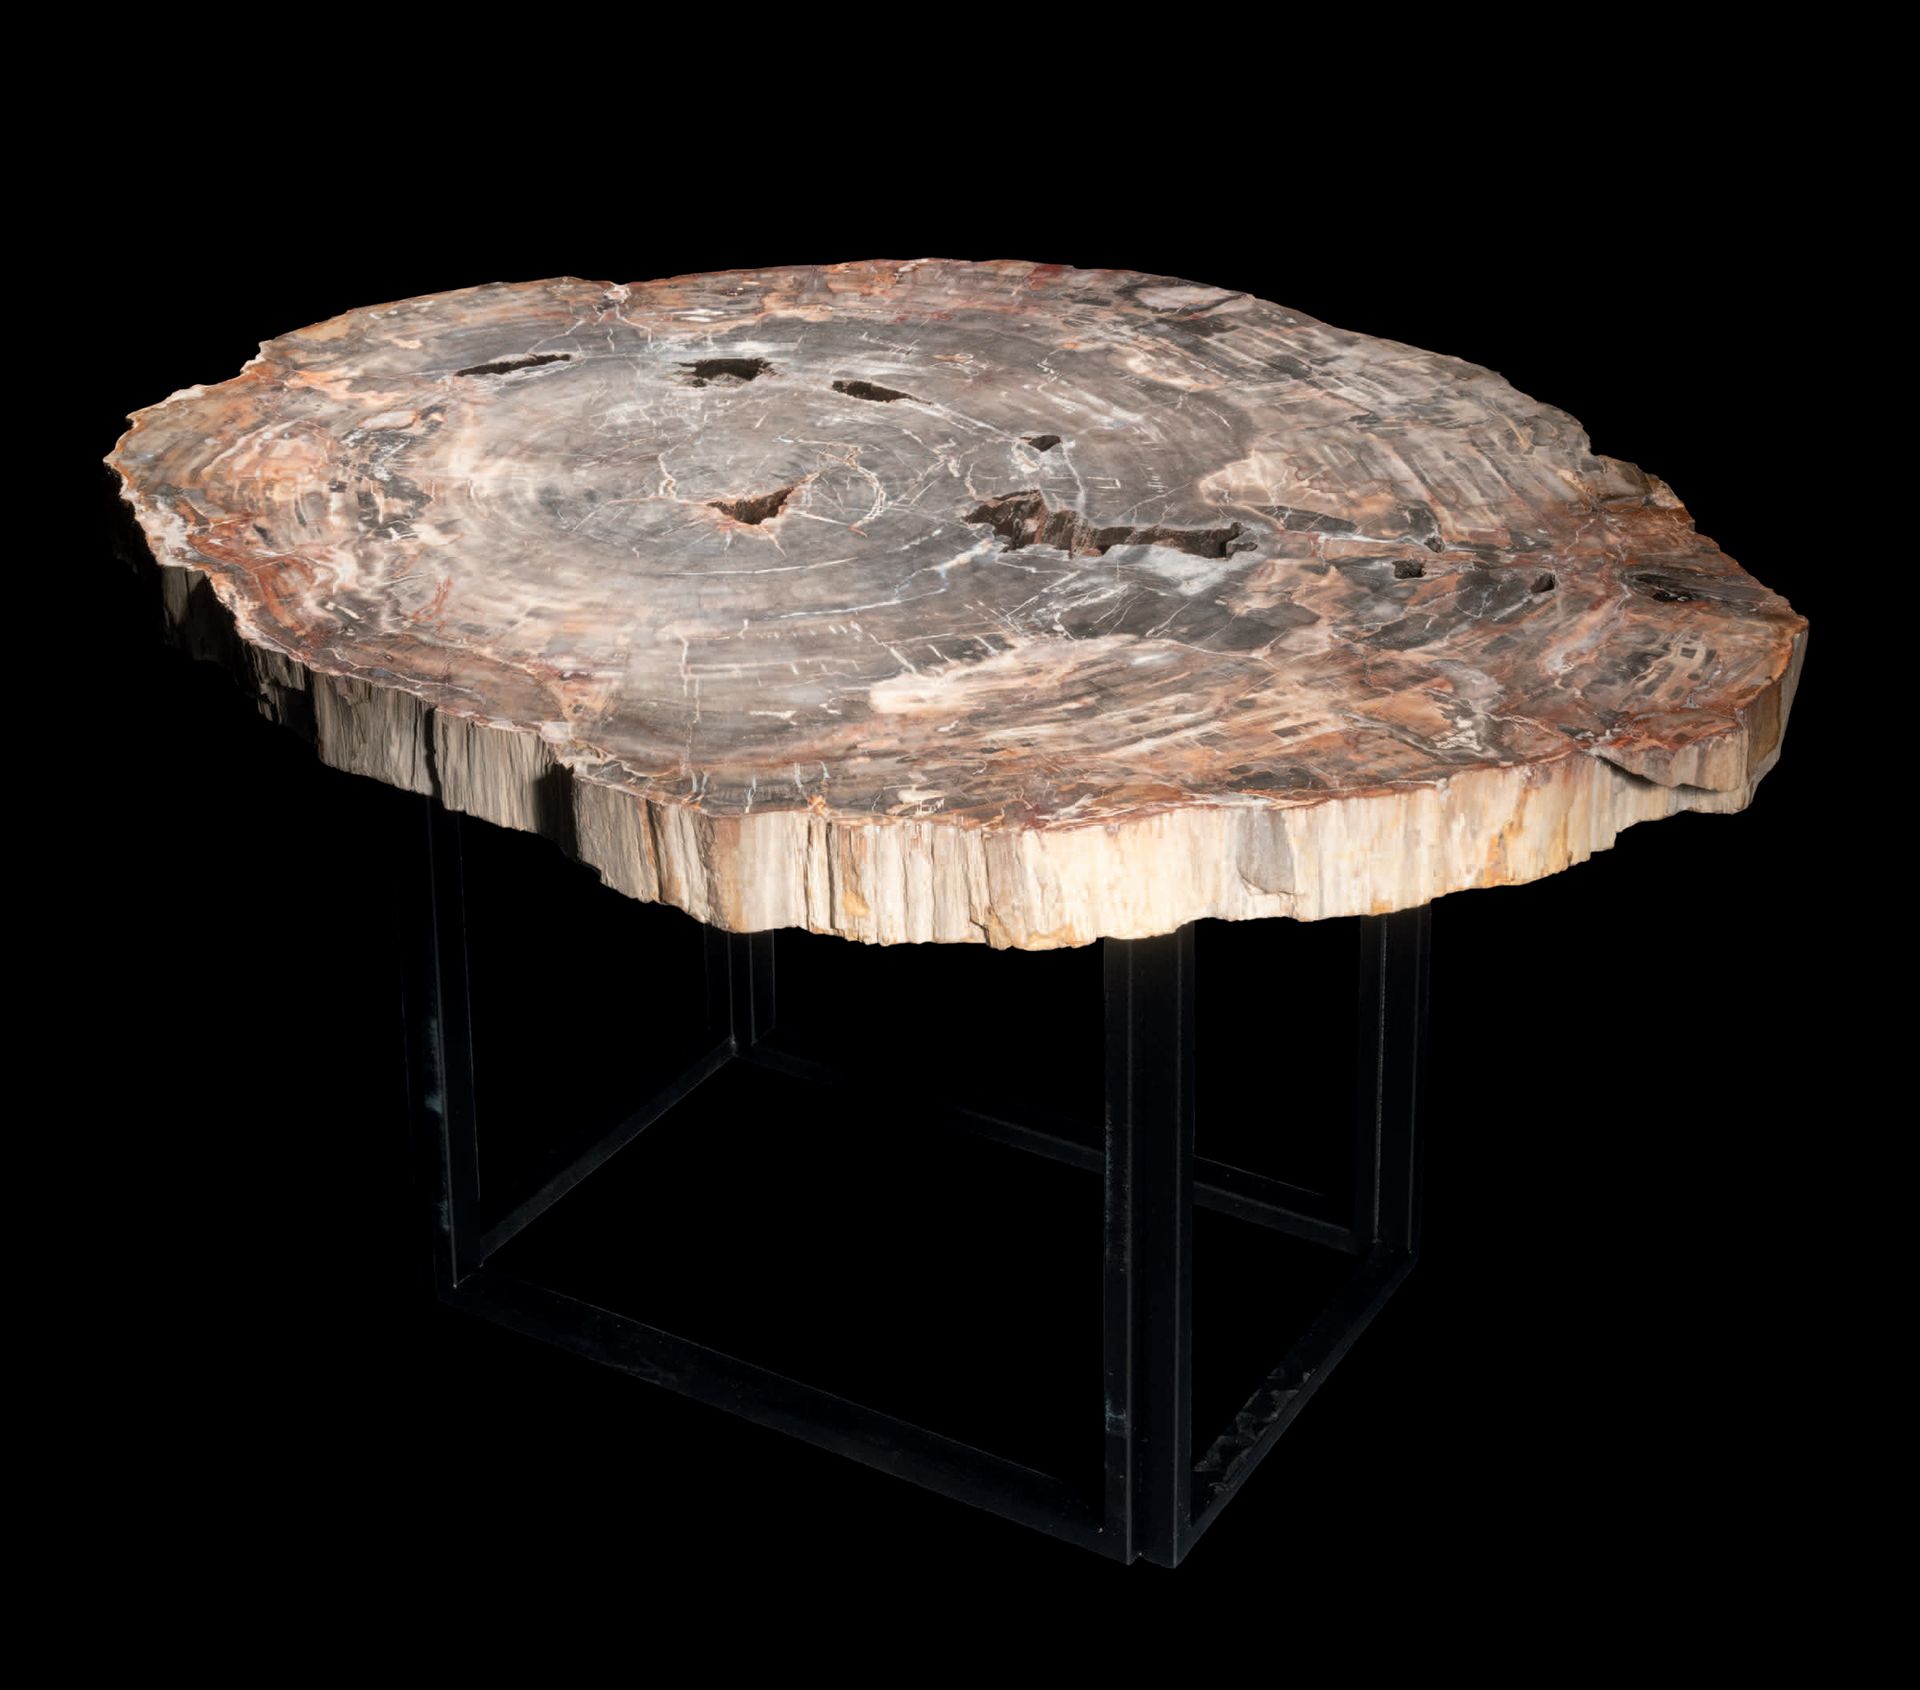 Null 巨大的化石木板条组成的金属腿矮桌
rias supérieur
马达加斯加
H. 45 cm - W. 90 cm - D. 74 cm